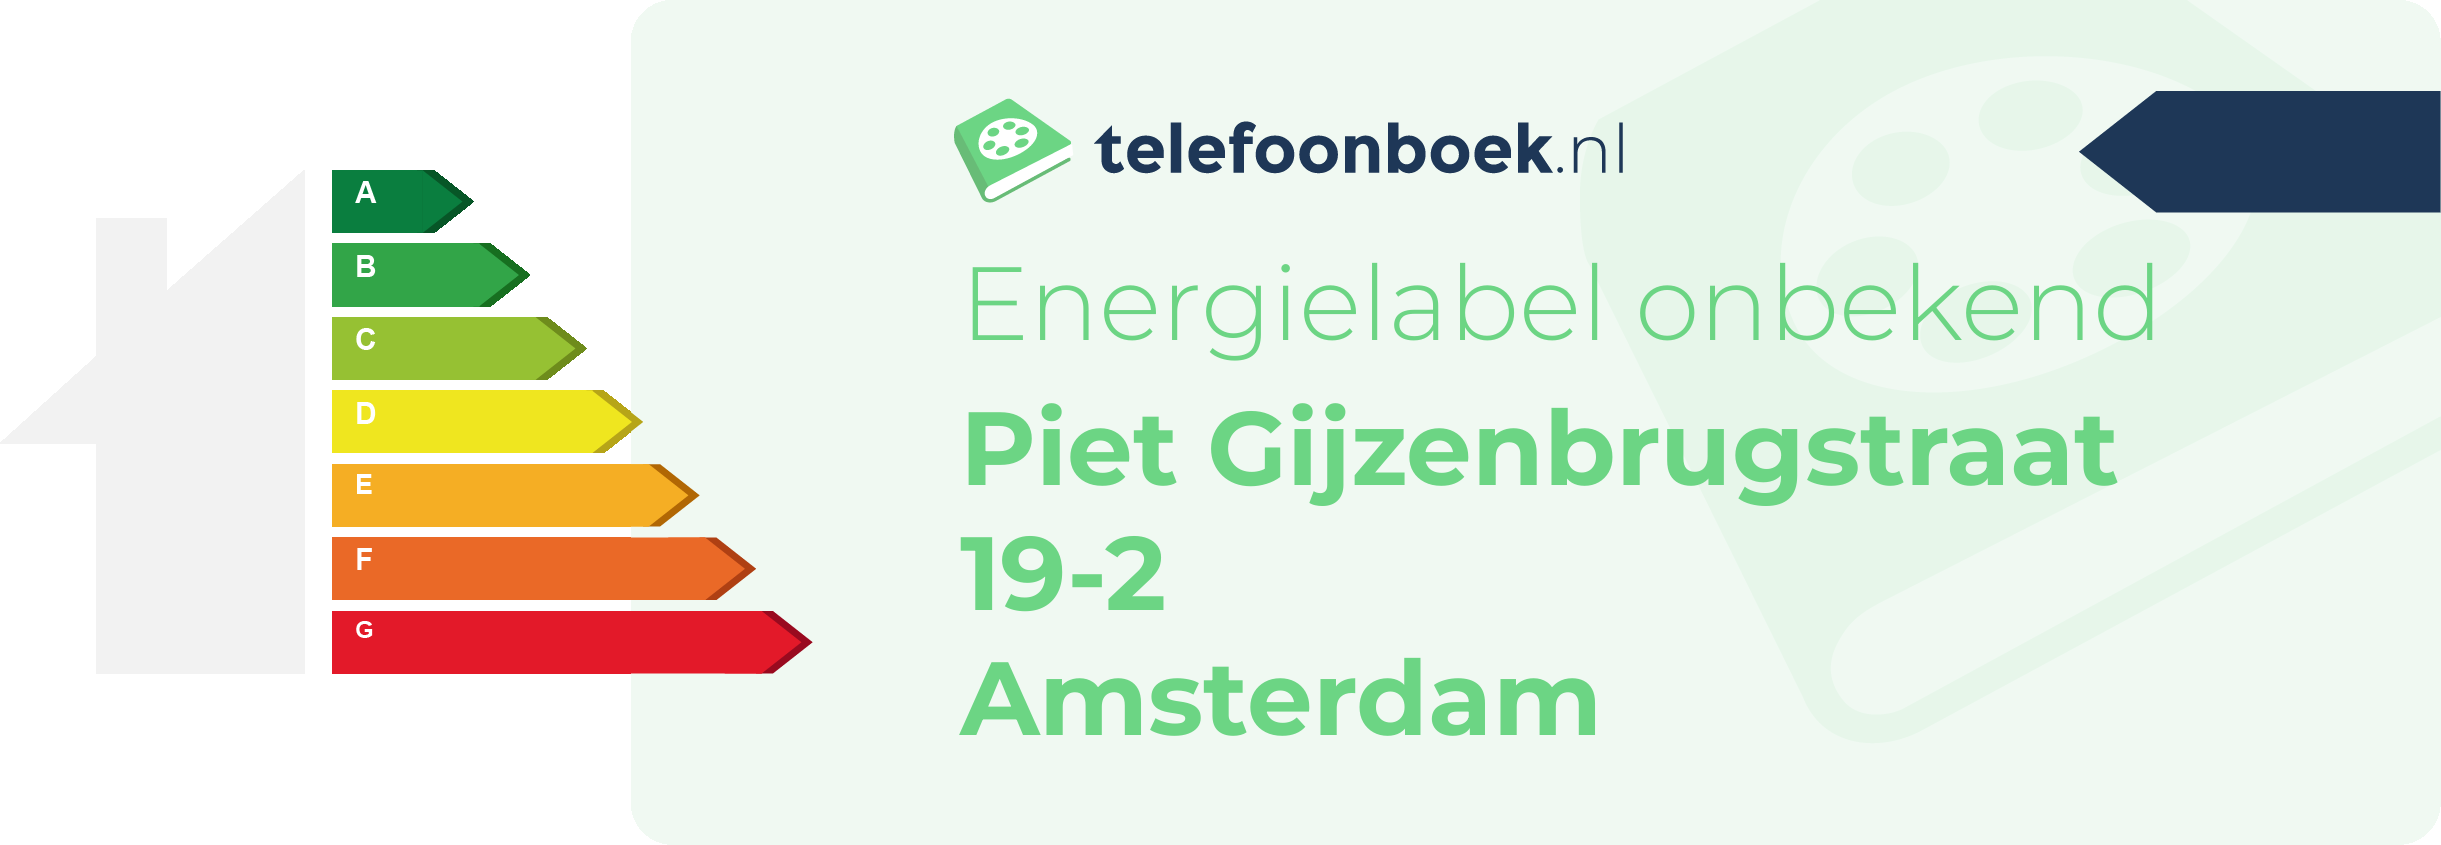 Energielabel Piet Gijzenbrugstraat 19-2 Amsterdam